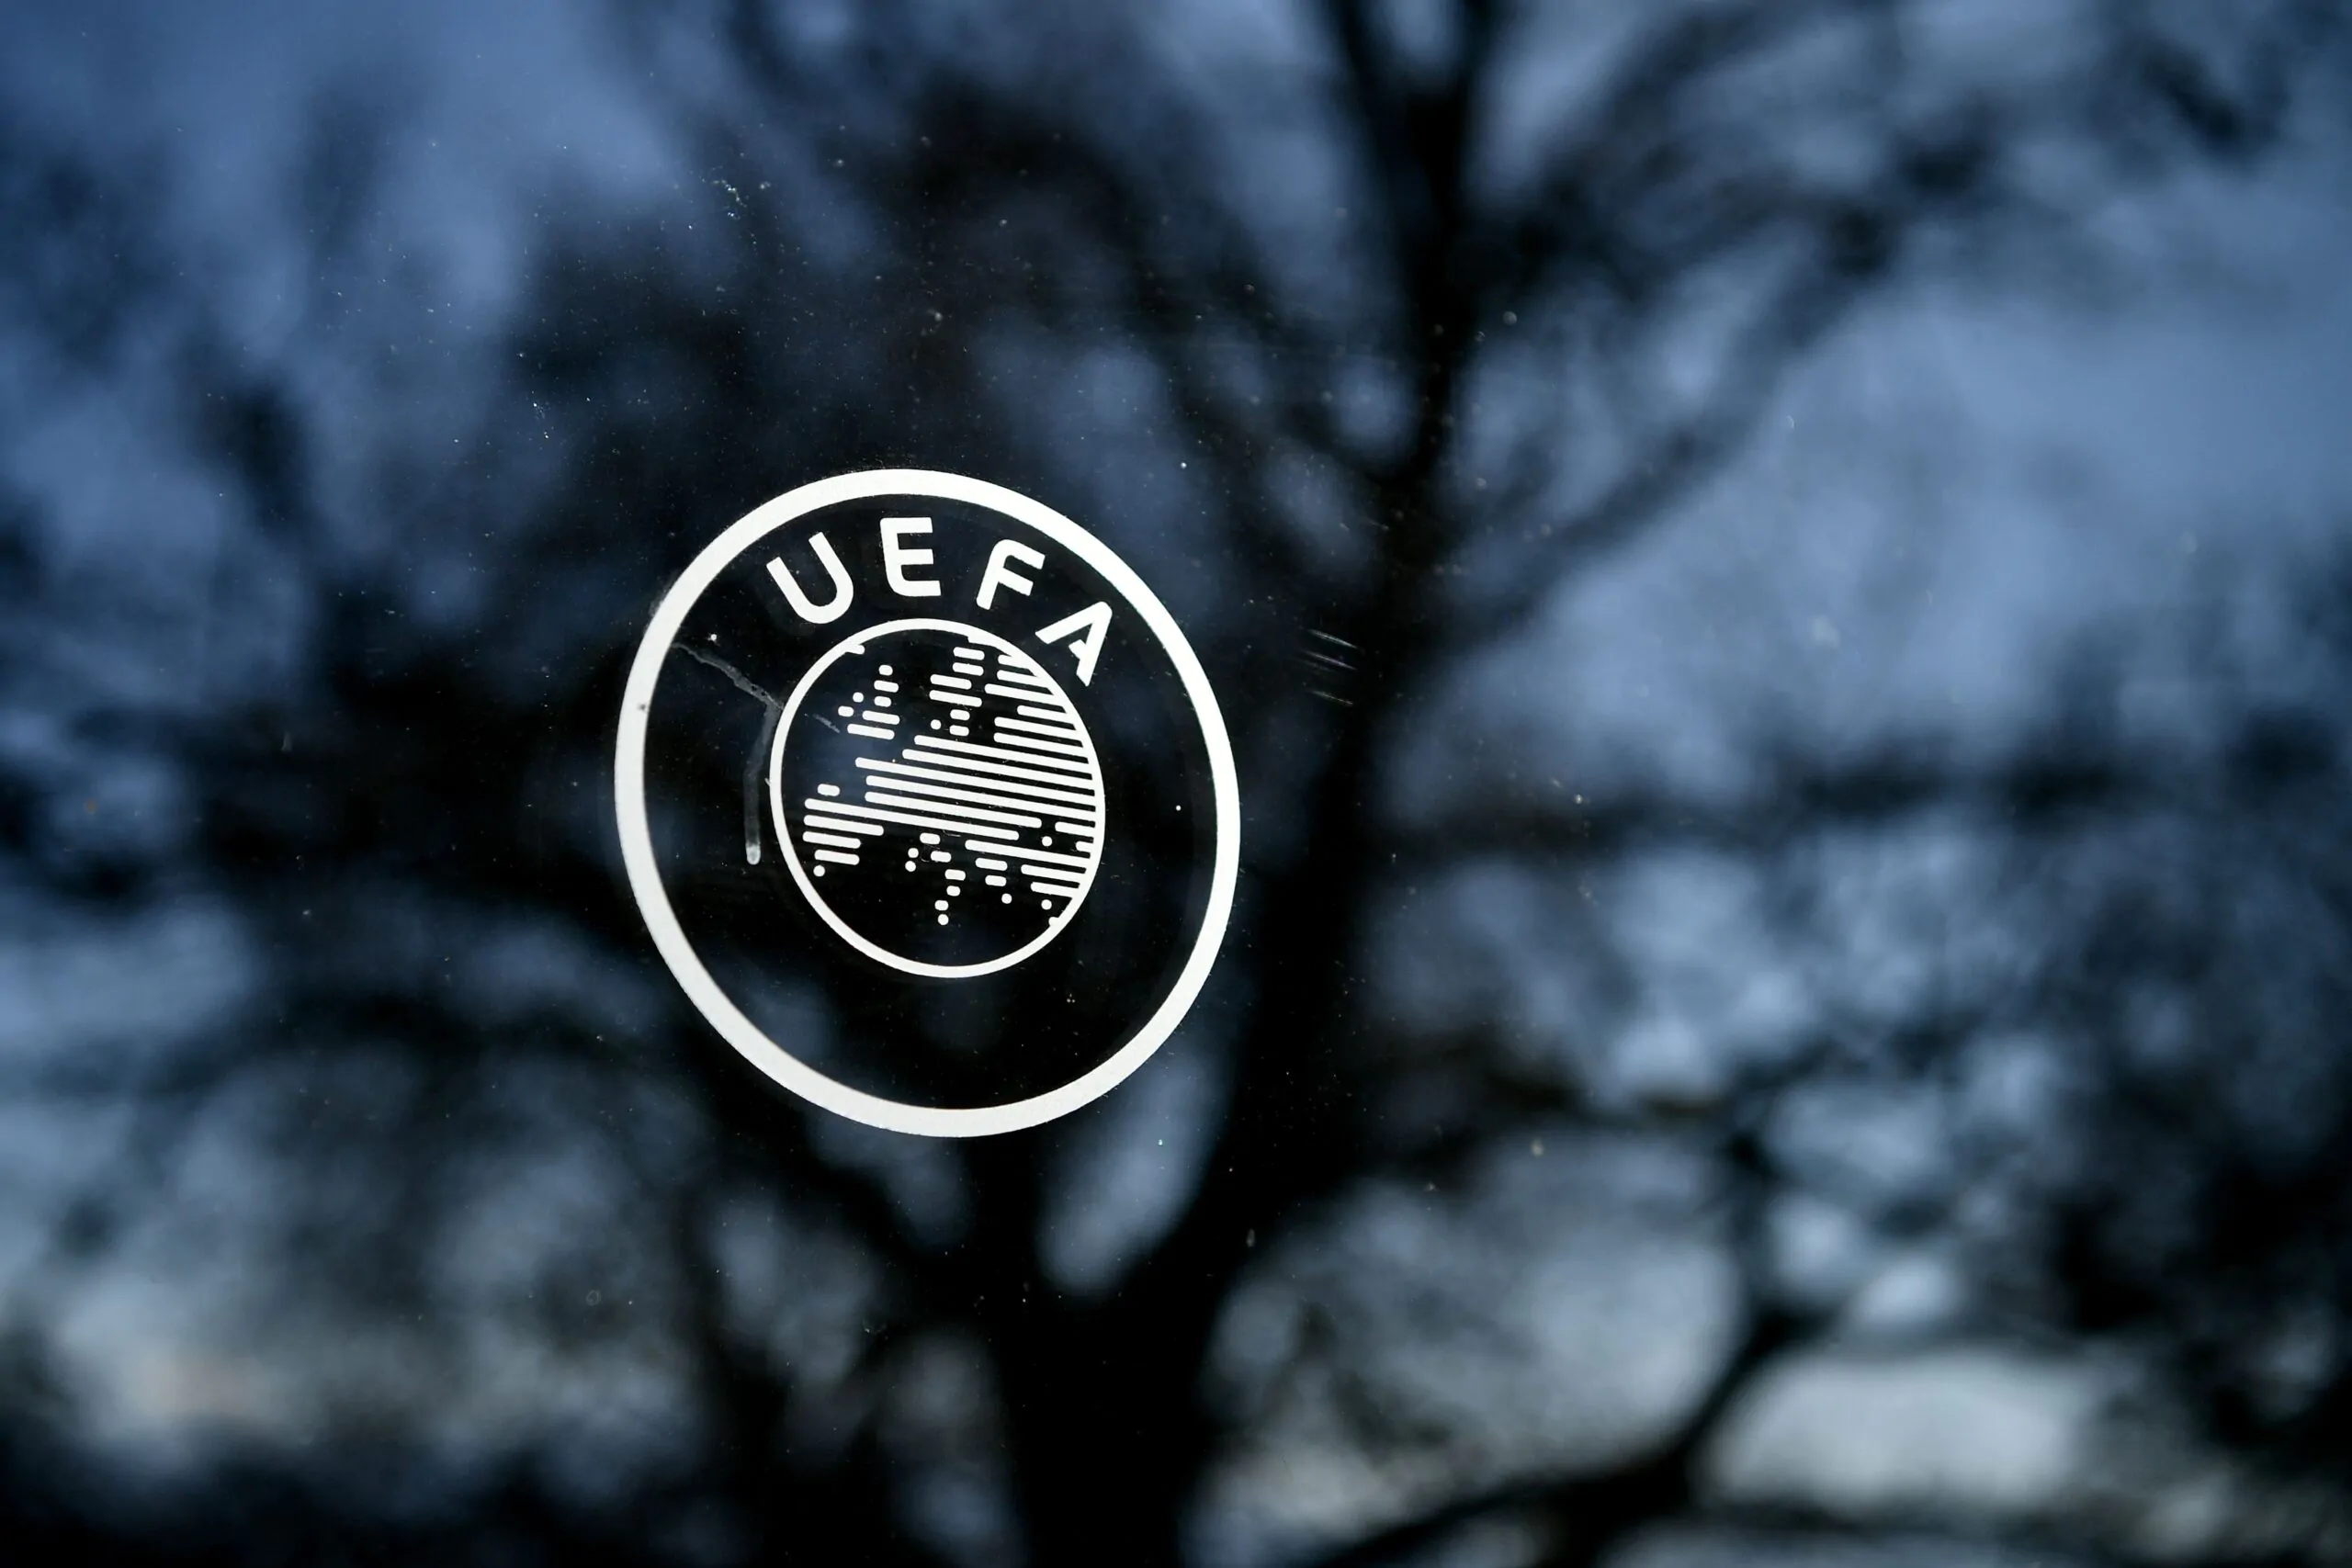 Caos in finale di Champions League, arriva il comunicato ufficiale della UEFA